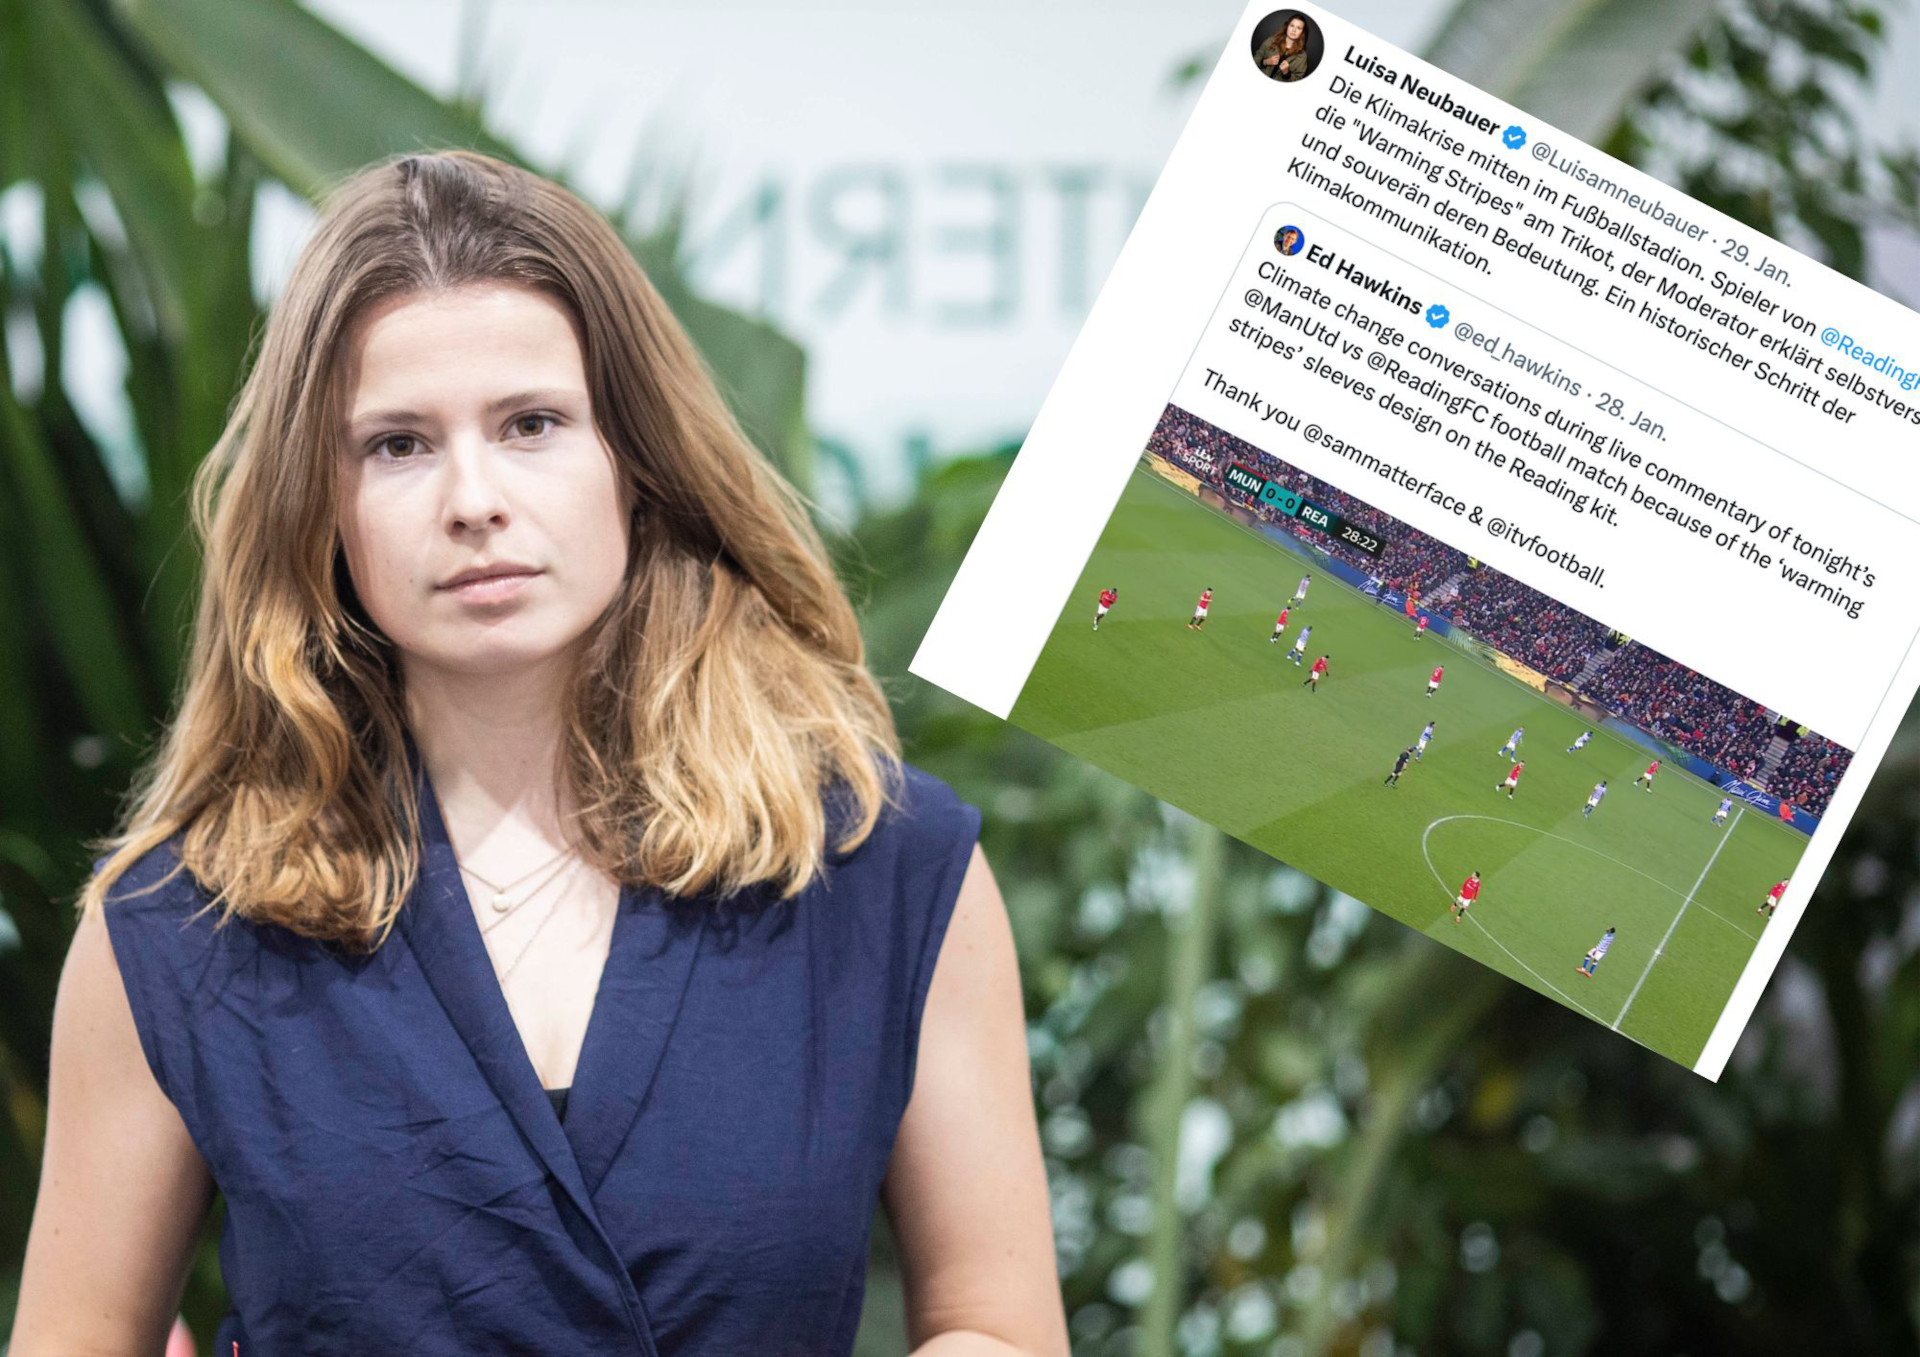 "Historischer Schritt": Luisa Neubauer lobt englischen Fußballverein